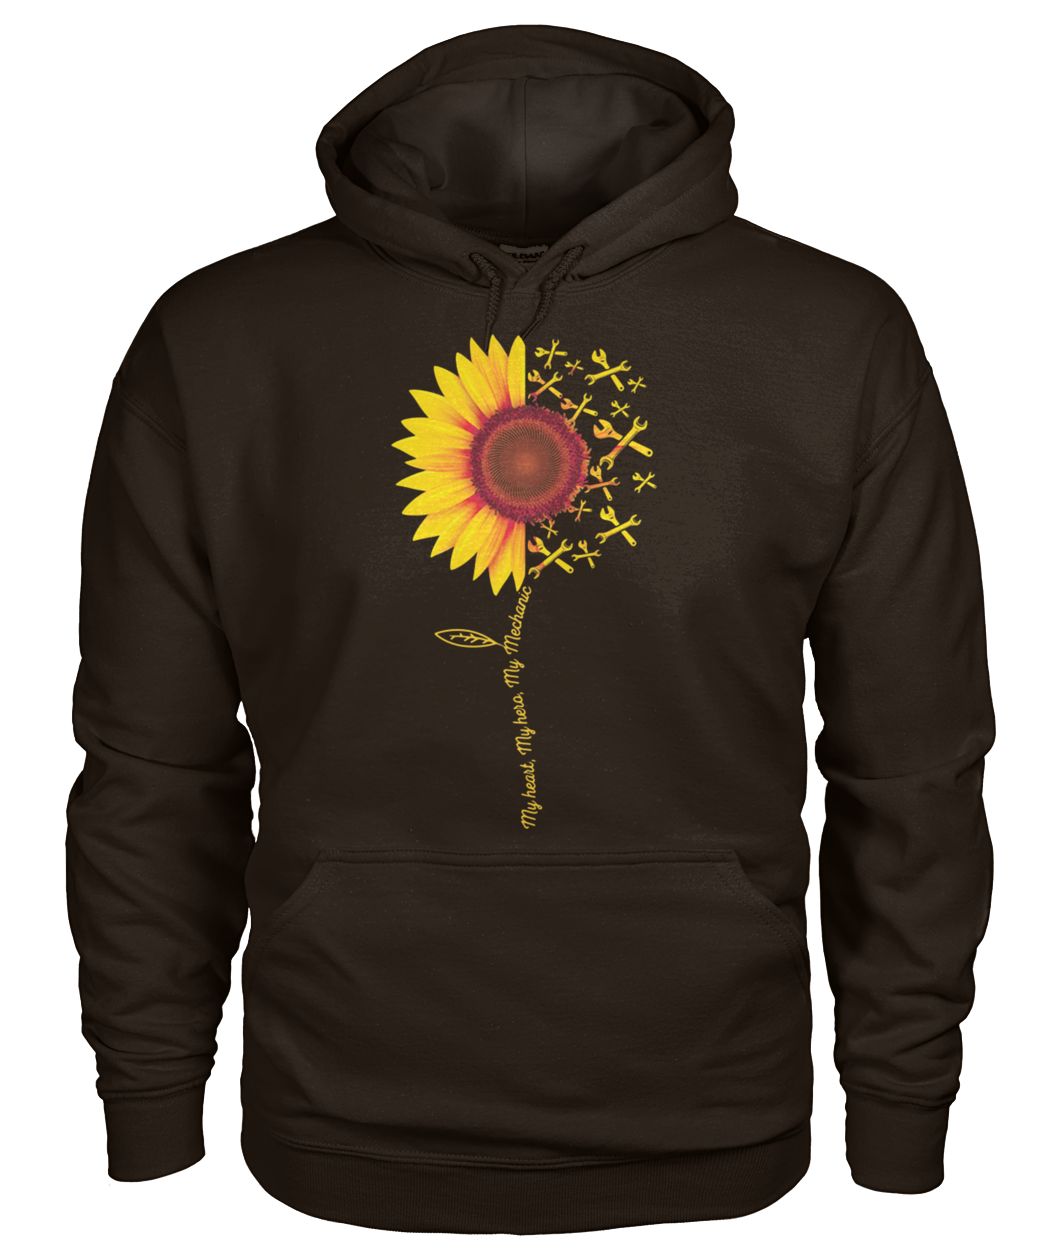 Sunflower my heart my hero my mechanic gildan hoodie